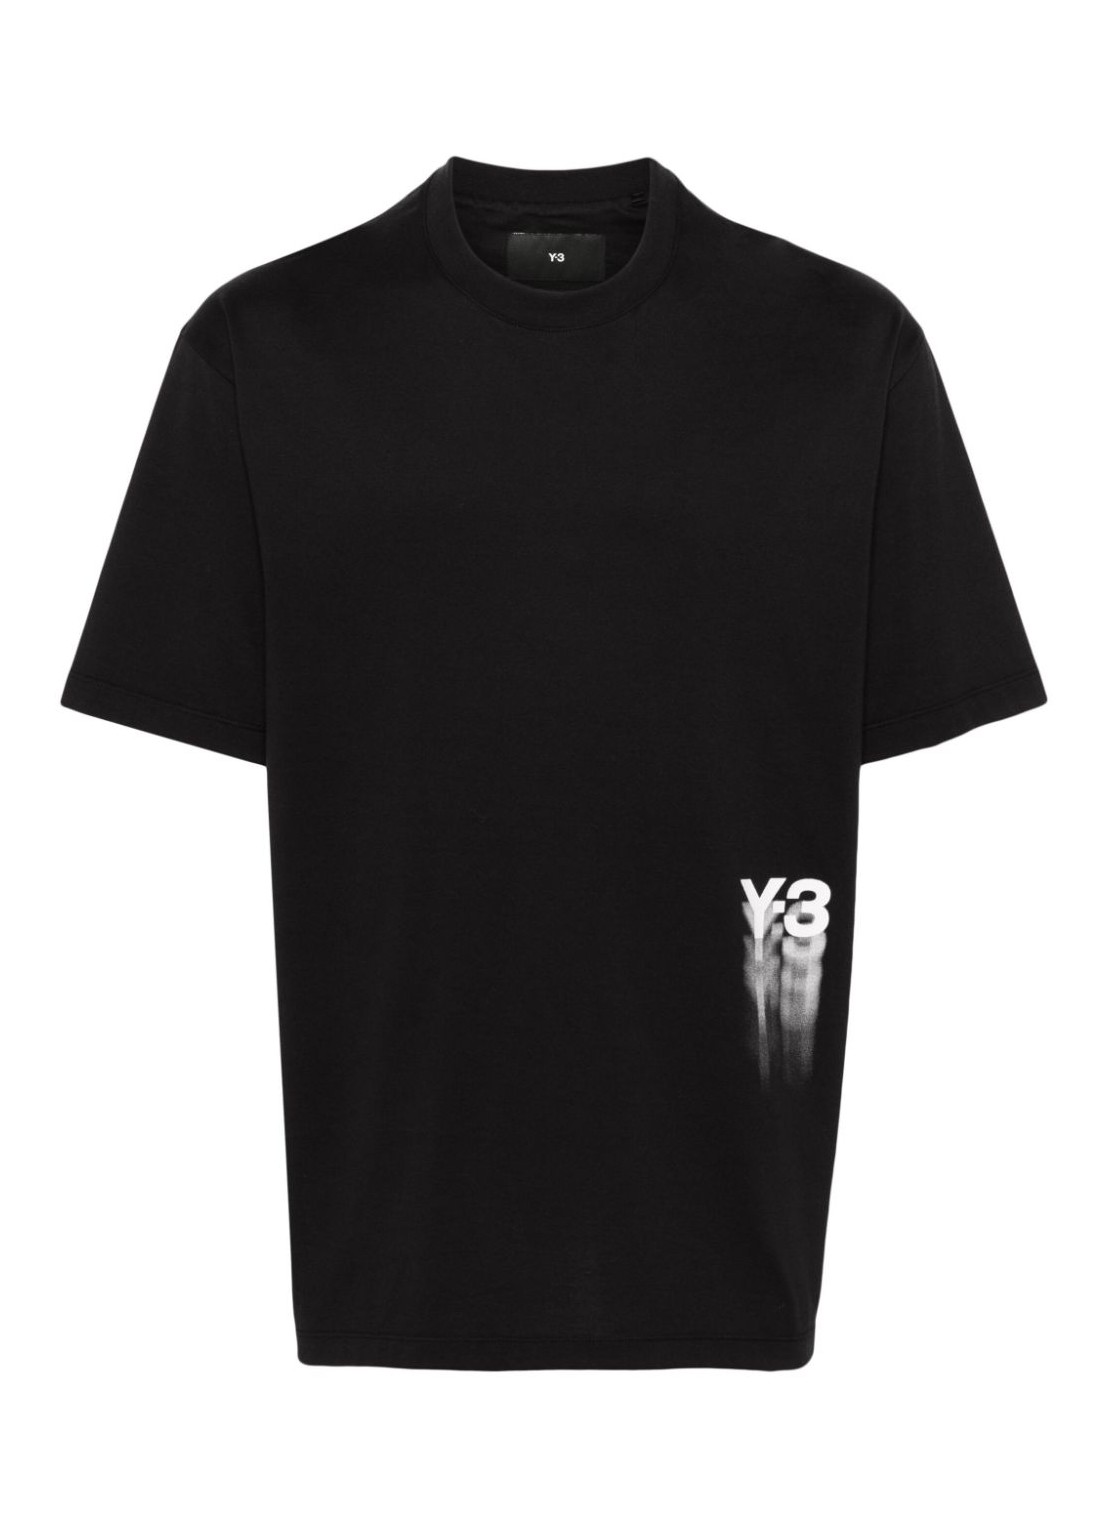 Camiseta y3 t-shirt man gfx ss tee iz3124 black talla M
 